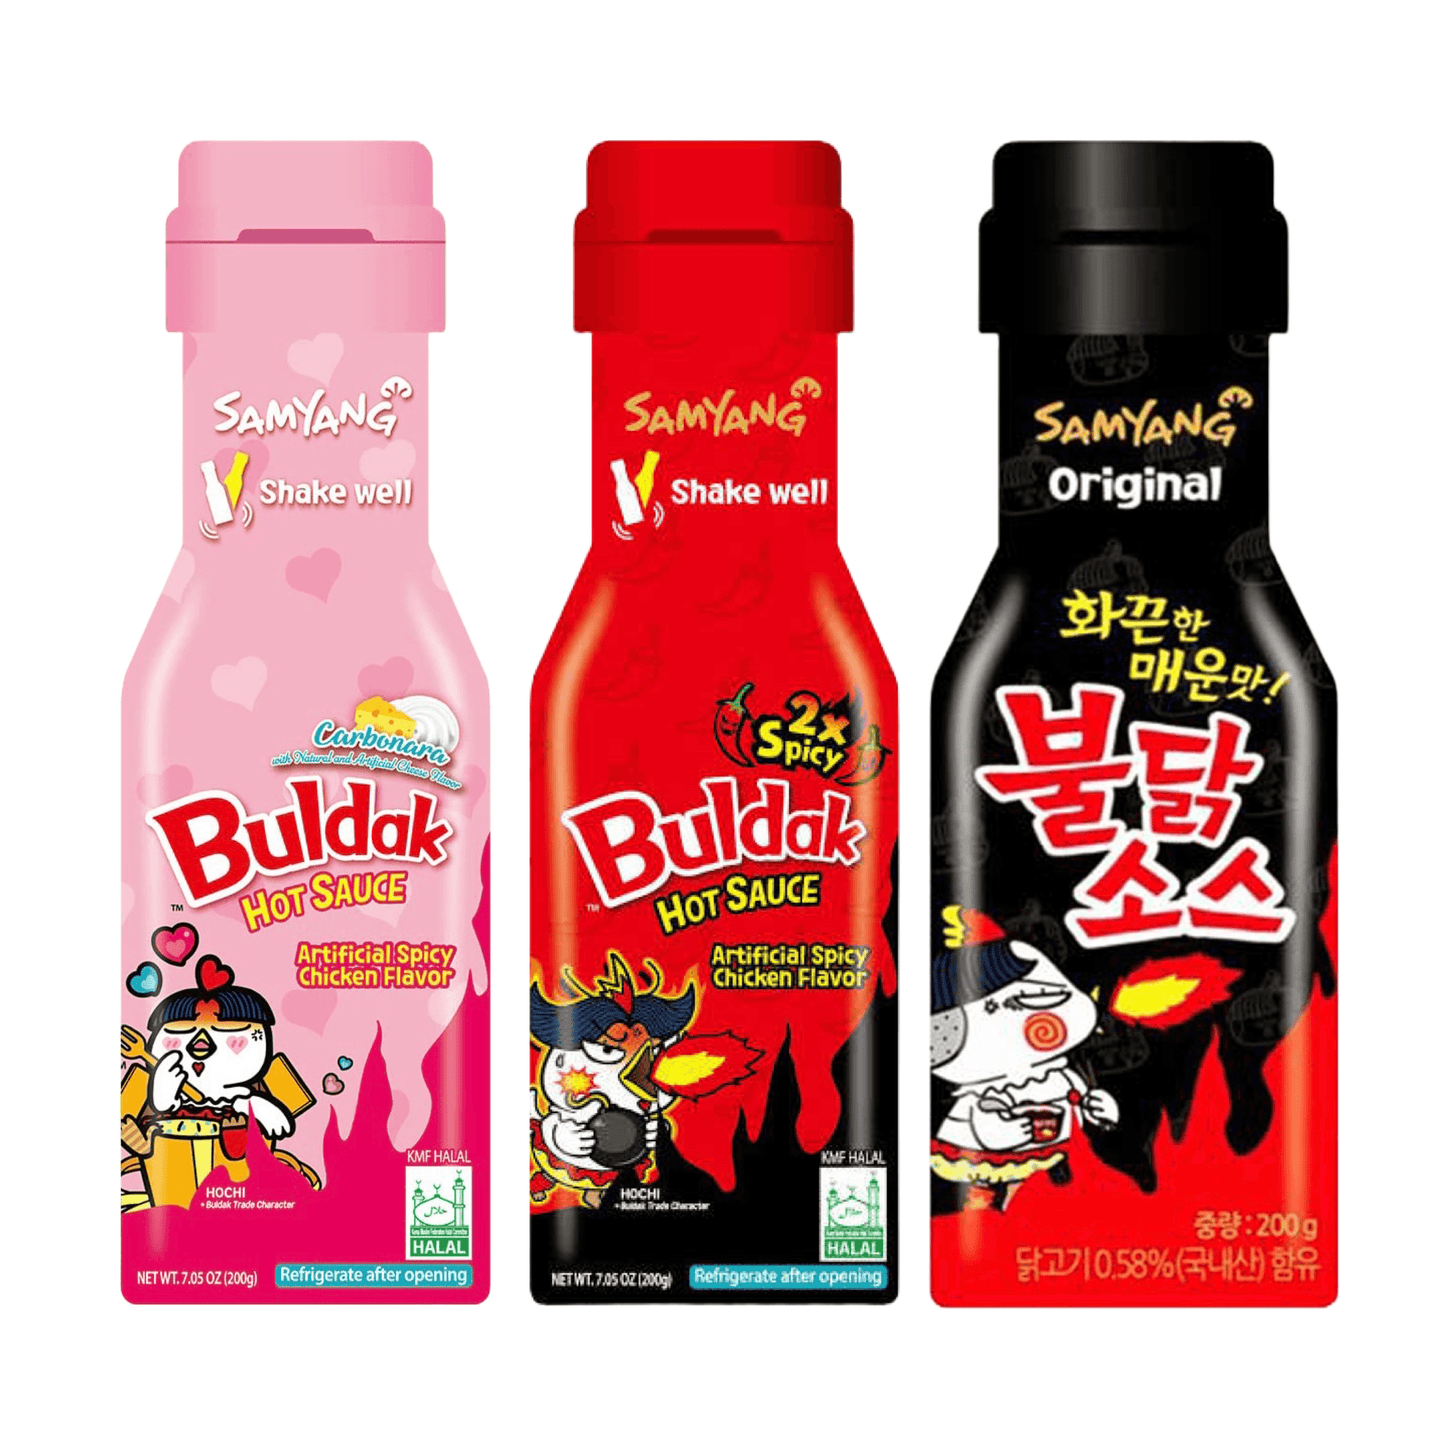 SamYang Buldak Hot Sauce 3x200g - The Snacks Box - Asian Snacks Store - The Snacks Box - Korean Snack - Japanese Snack